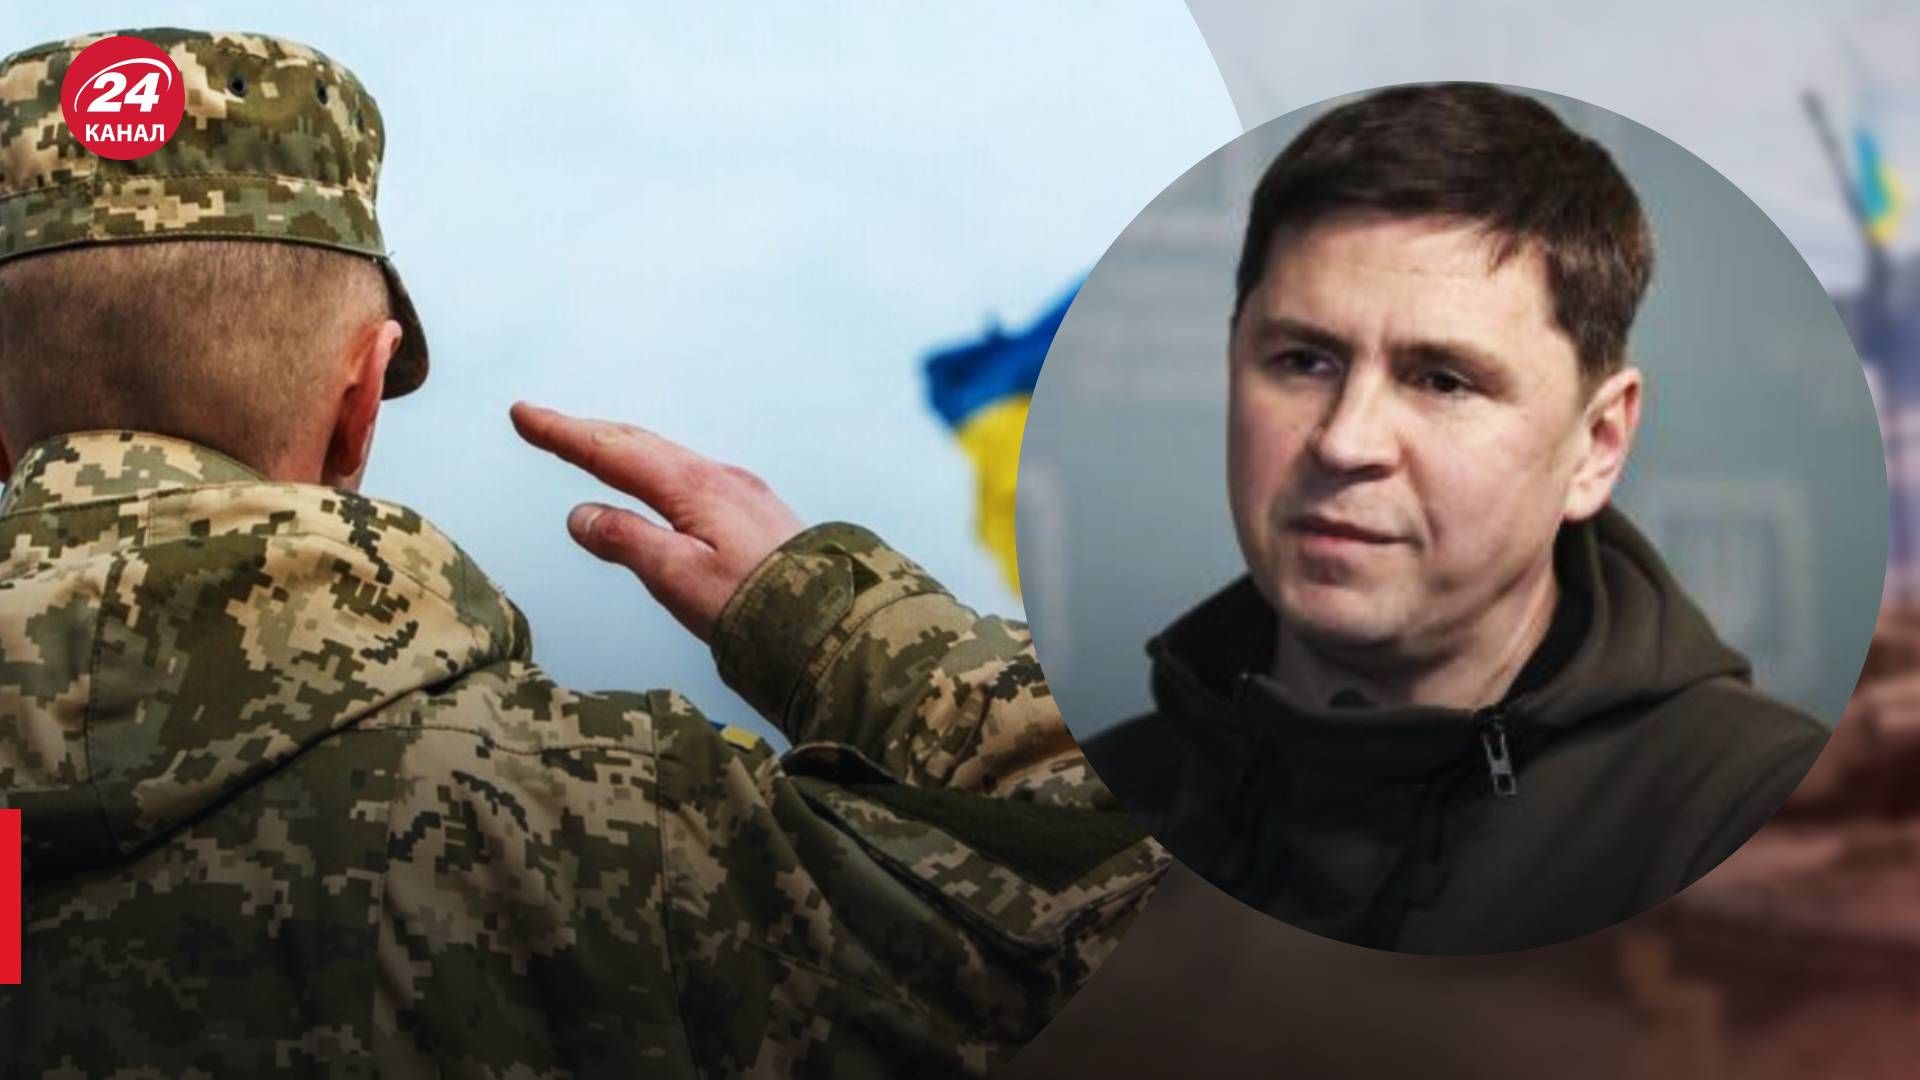 Мобілізація в Україні - подоляк прокоментував, чи буде активізація - 24 Канал